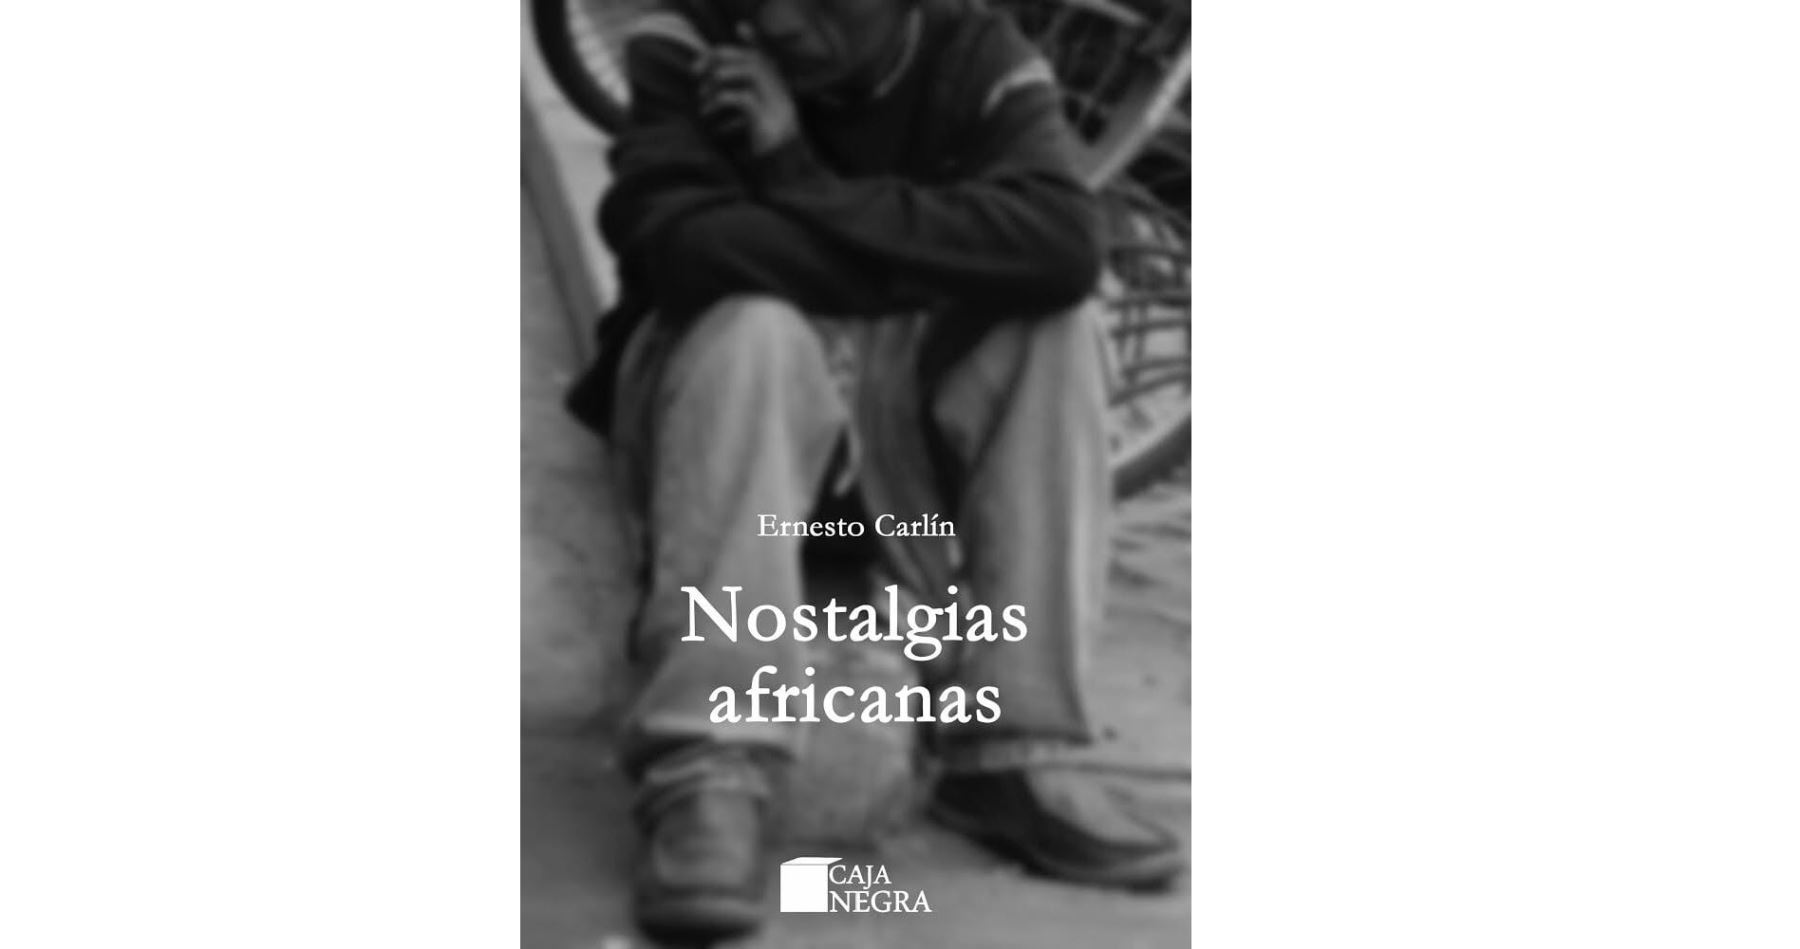 Portada del libro "Nostalgias africanas", de Ernesto Carlín.